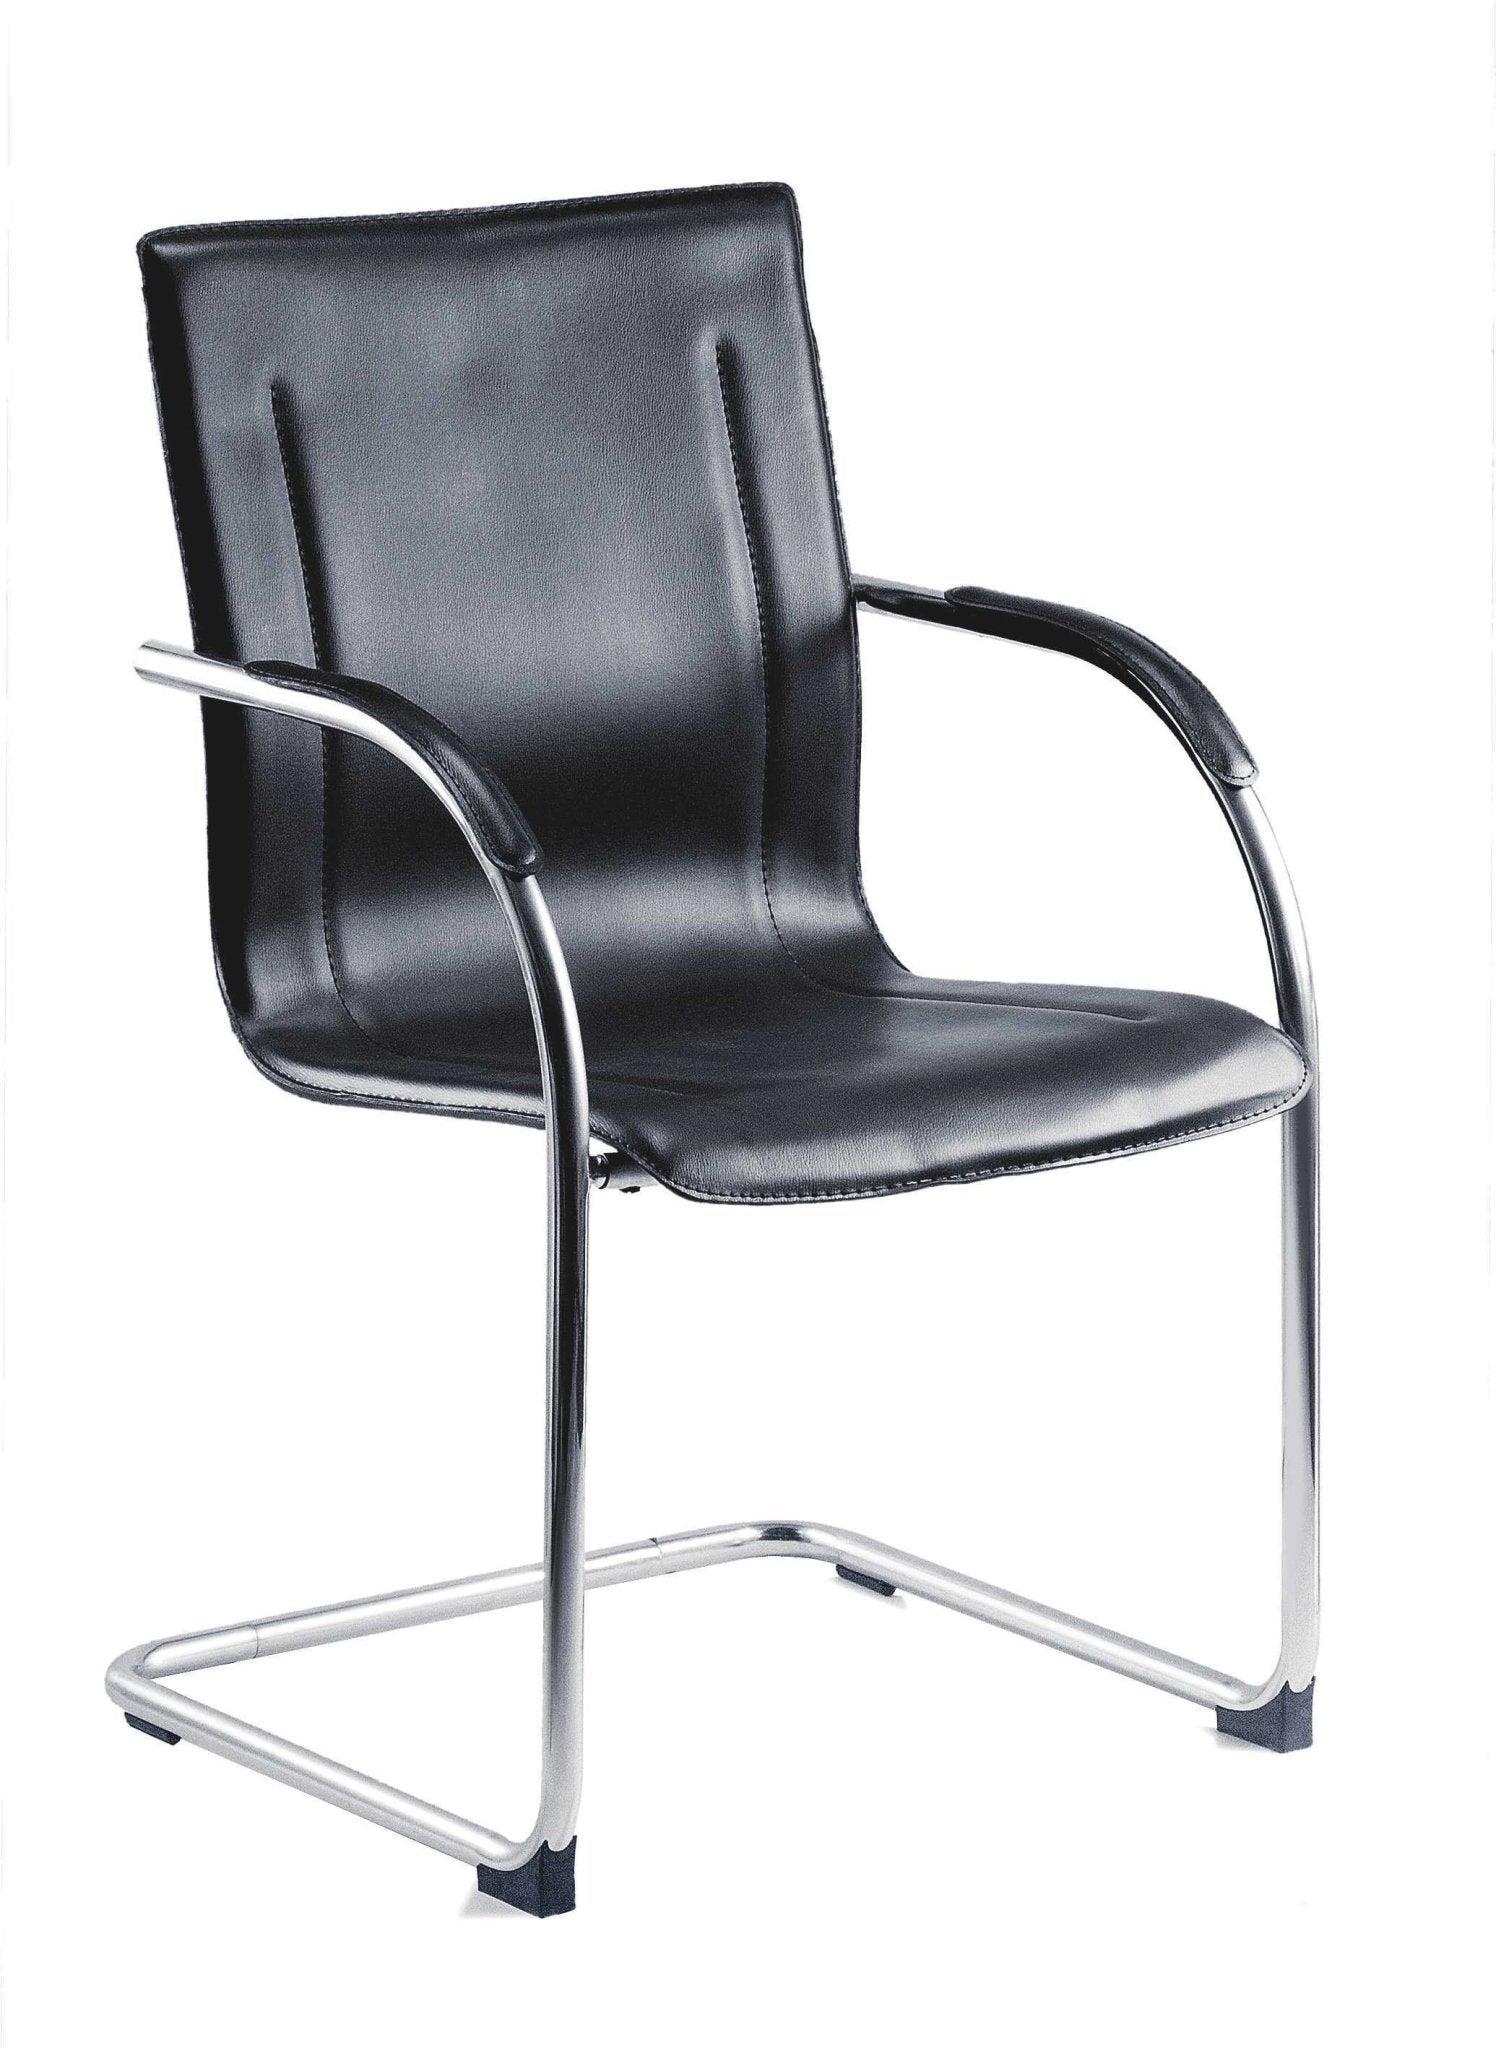 Guest reception chair (singles) - crimblefest furniture - image 1